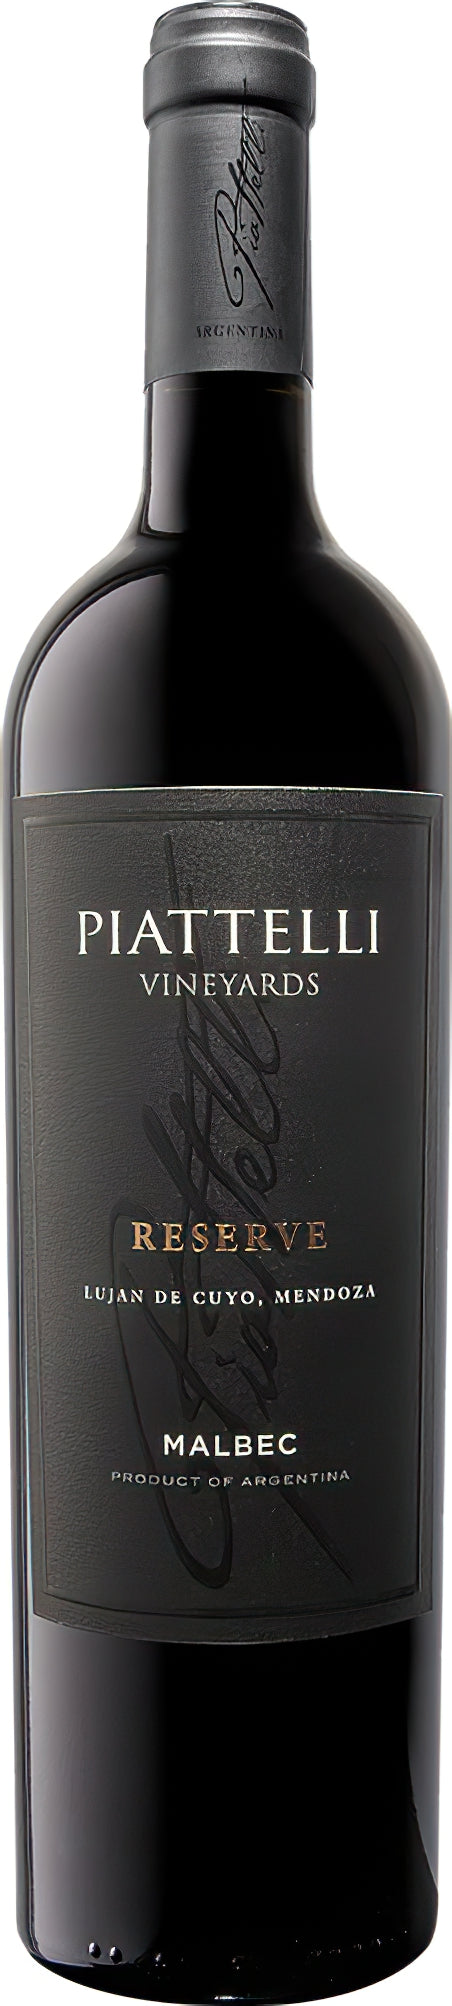 Vino Tinto Piattelli Vineyards Malbec 750 ml